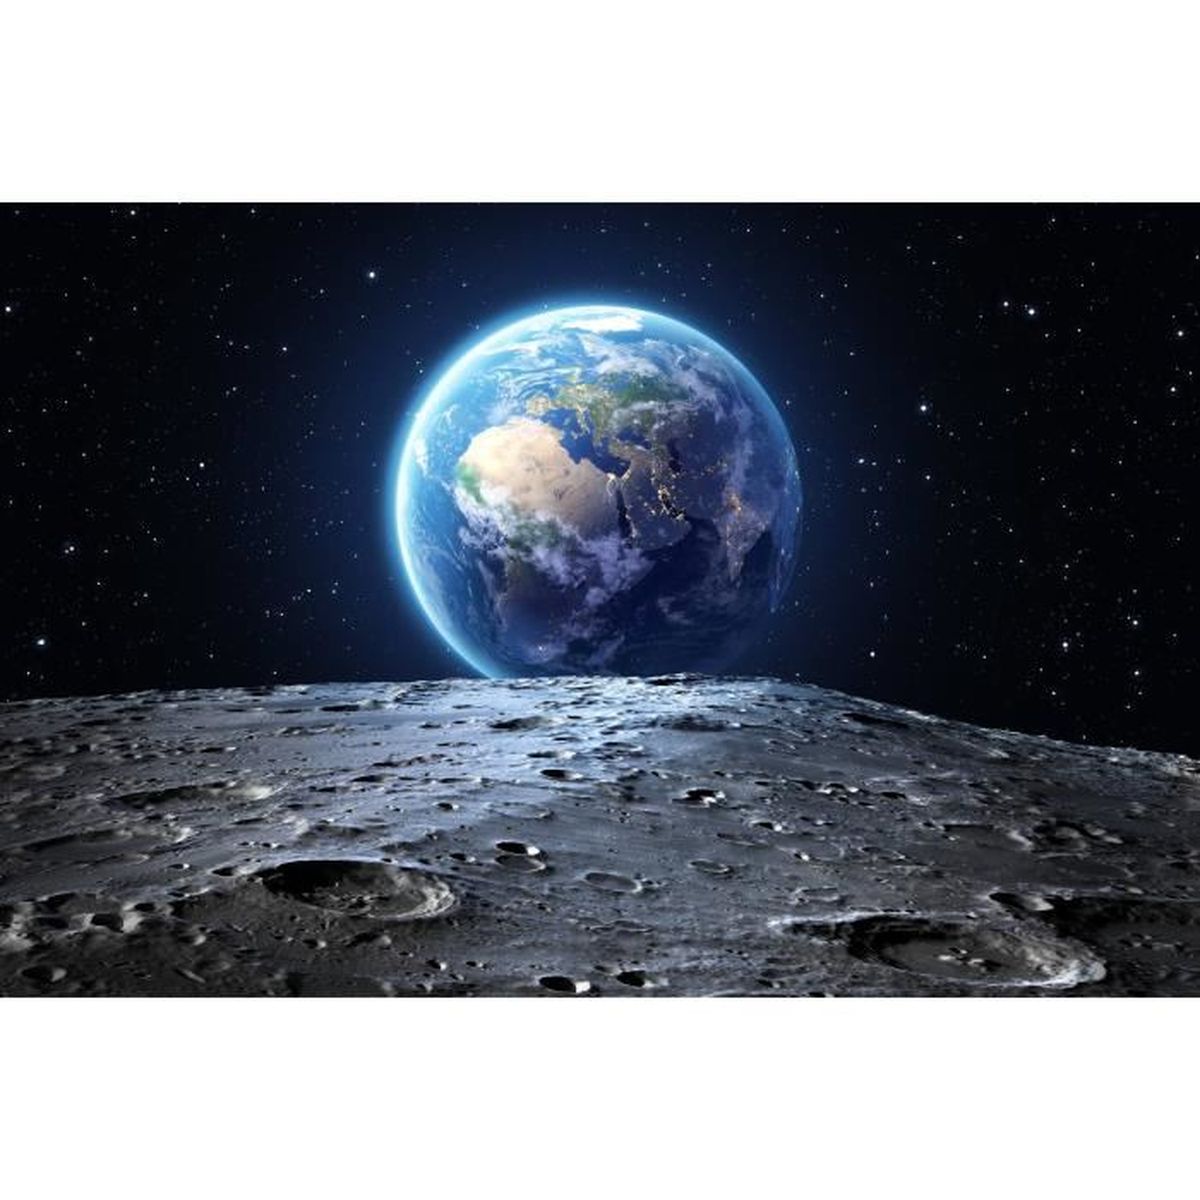 210 x 140 cm GREAT ART Papier Peint Décoration Murale Terre du Monde Terre Lune Univers Tout Cosmos Espace Monde Globe Étoiles Lune Orbite de lespace Planète Terre